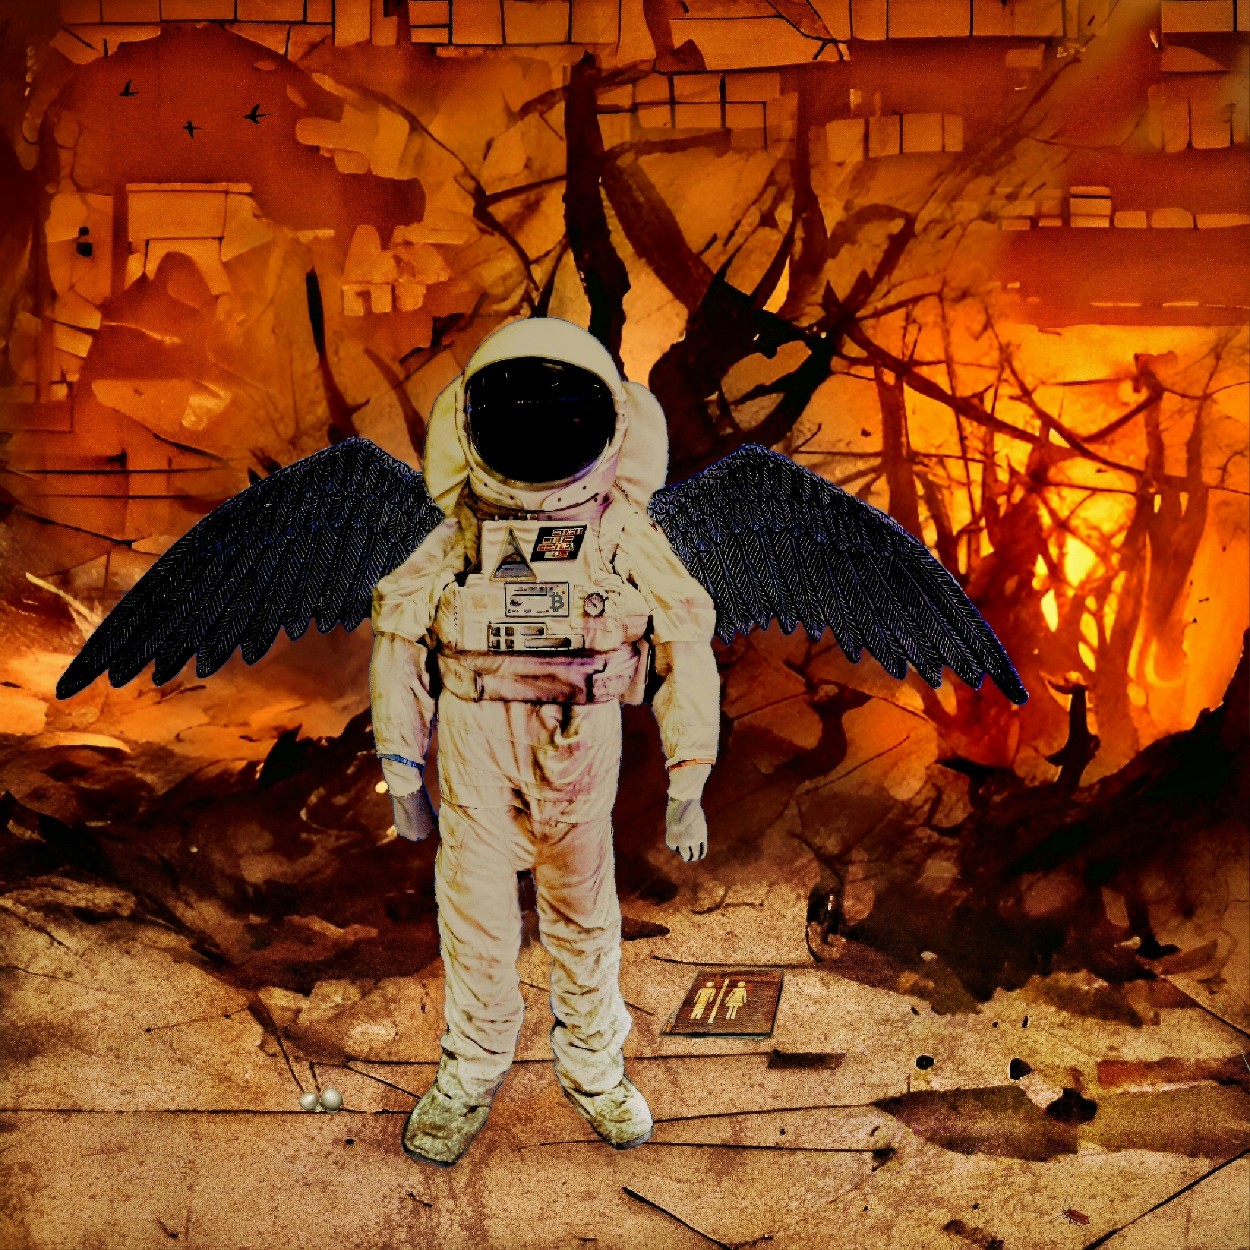 Astronaut met zwarte vleugels als engel des doods in een brandend deco. Heftig werk van Ruben van Gogh